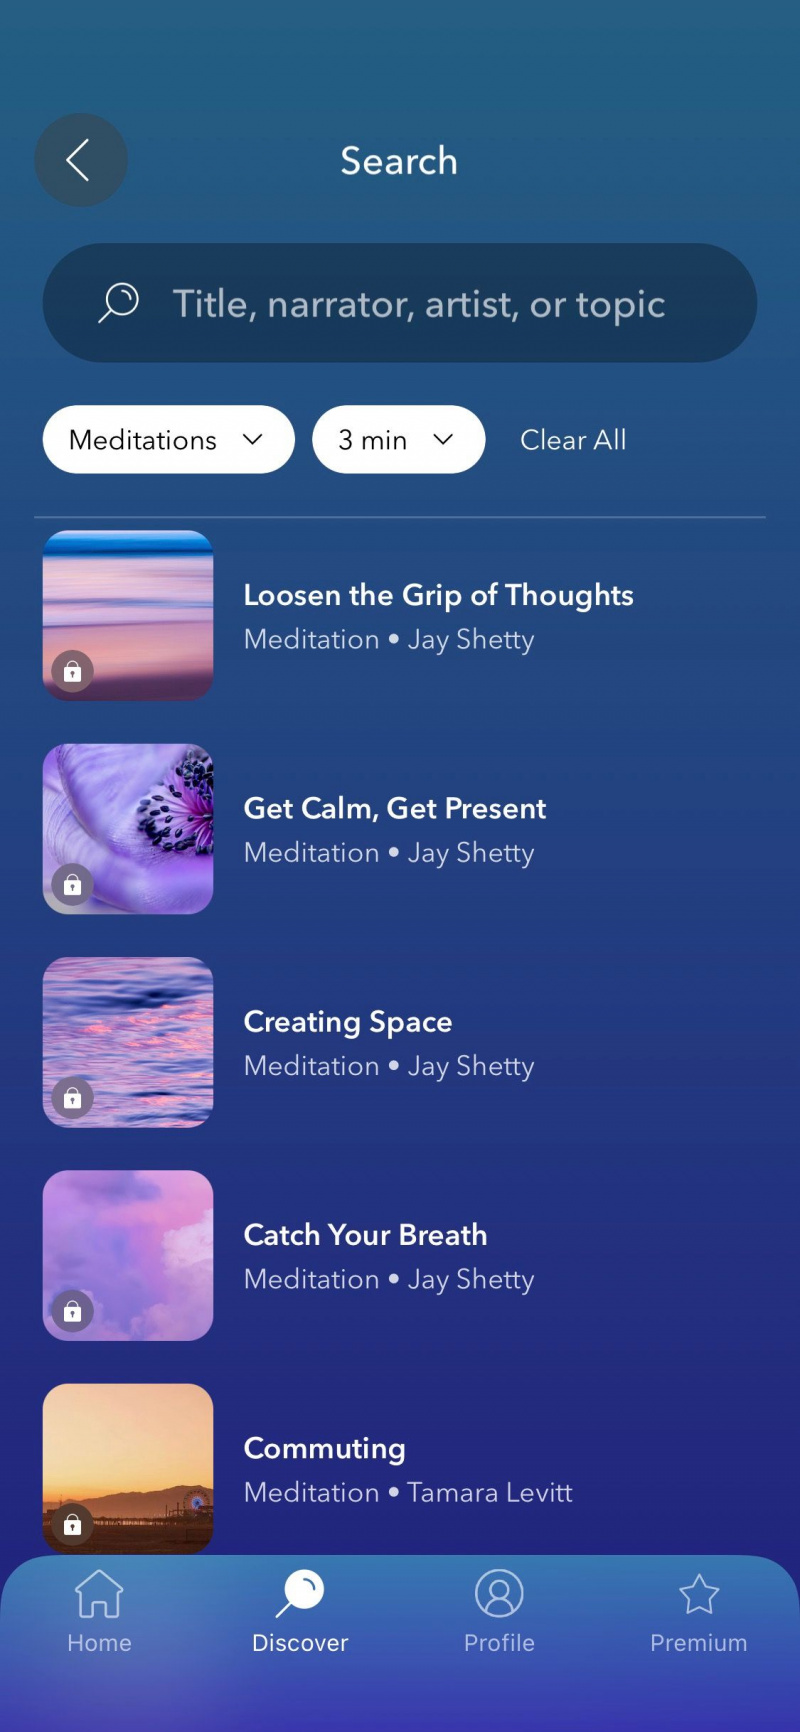   Captura de tela do aplicativo Calm mostrando opções de meditação de 3 minutos